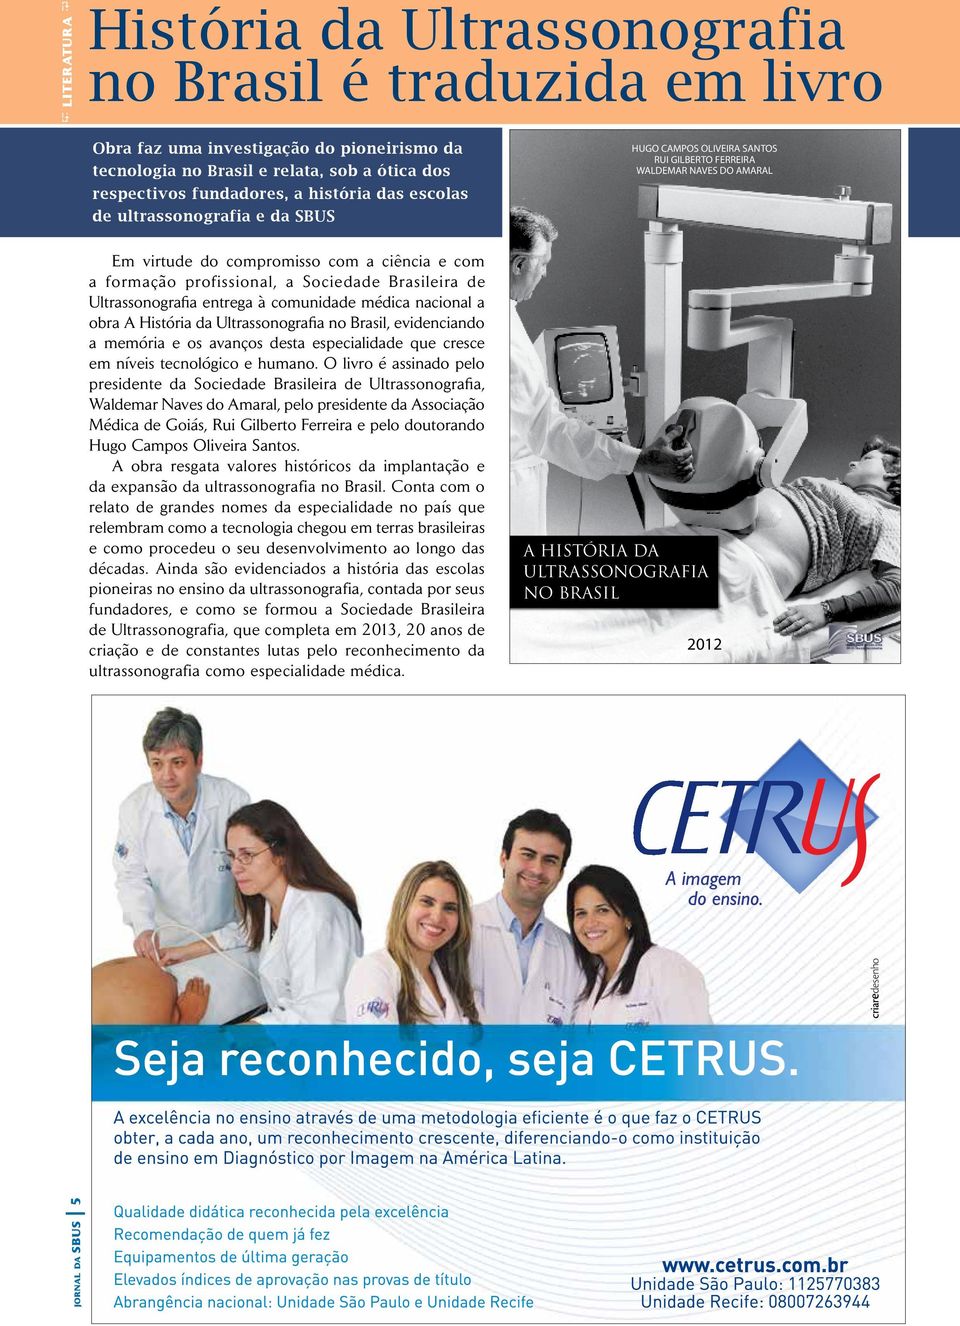 profissional, a Sociedade Brasileira de Ultrassonografia entrega à comunidade médica nacional a obra A História da Ultrassonografia no Brasil, evidenciando a memória e os avanços desta especialidade